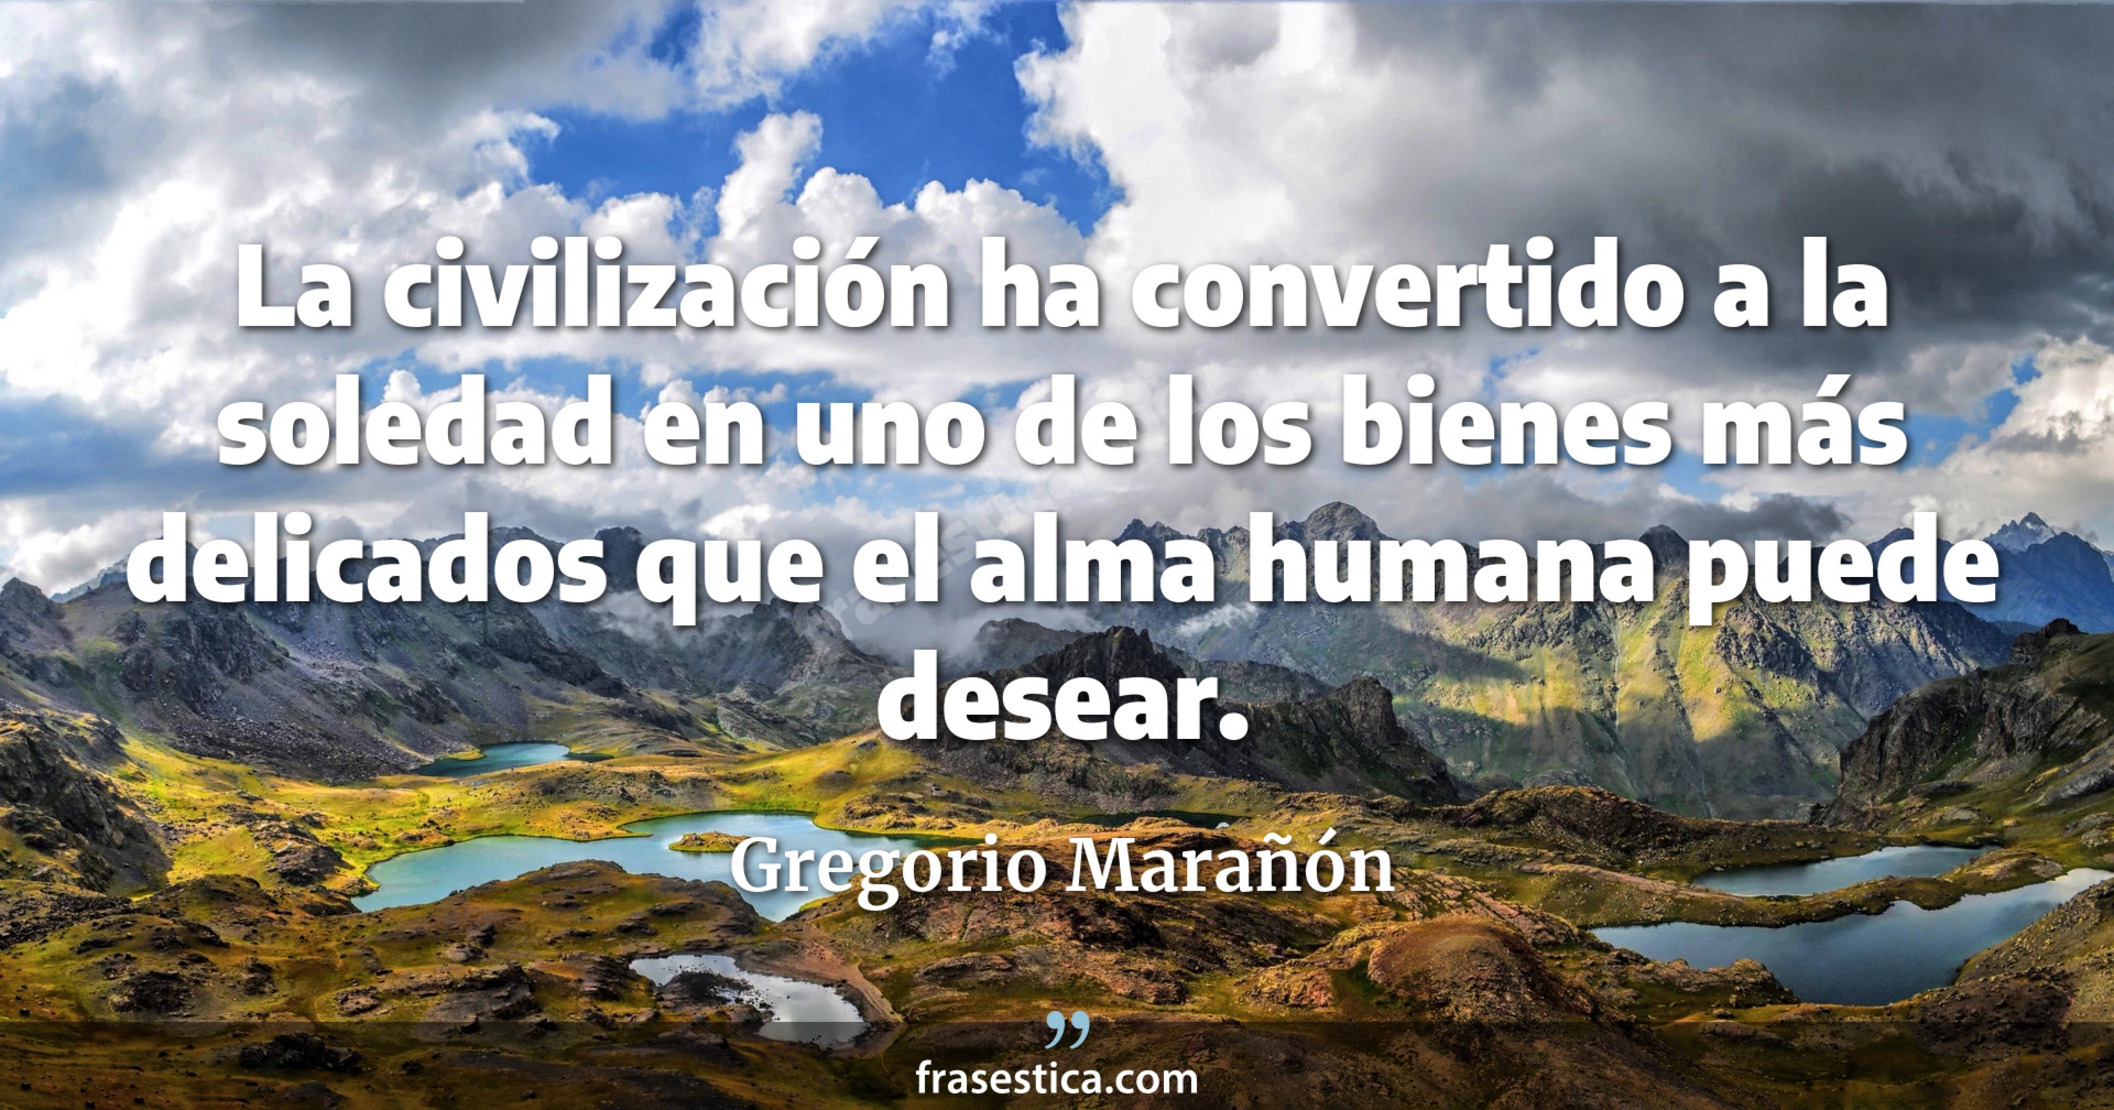 La civilización ha convertido a la soledad en uno de los bienes más delicados que el alma humana puede desear. - Gregorio Marañón